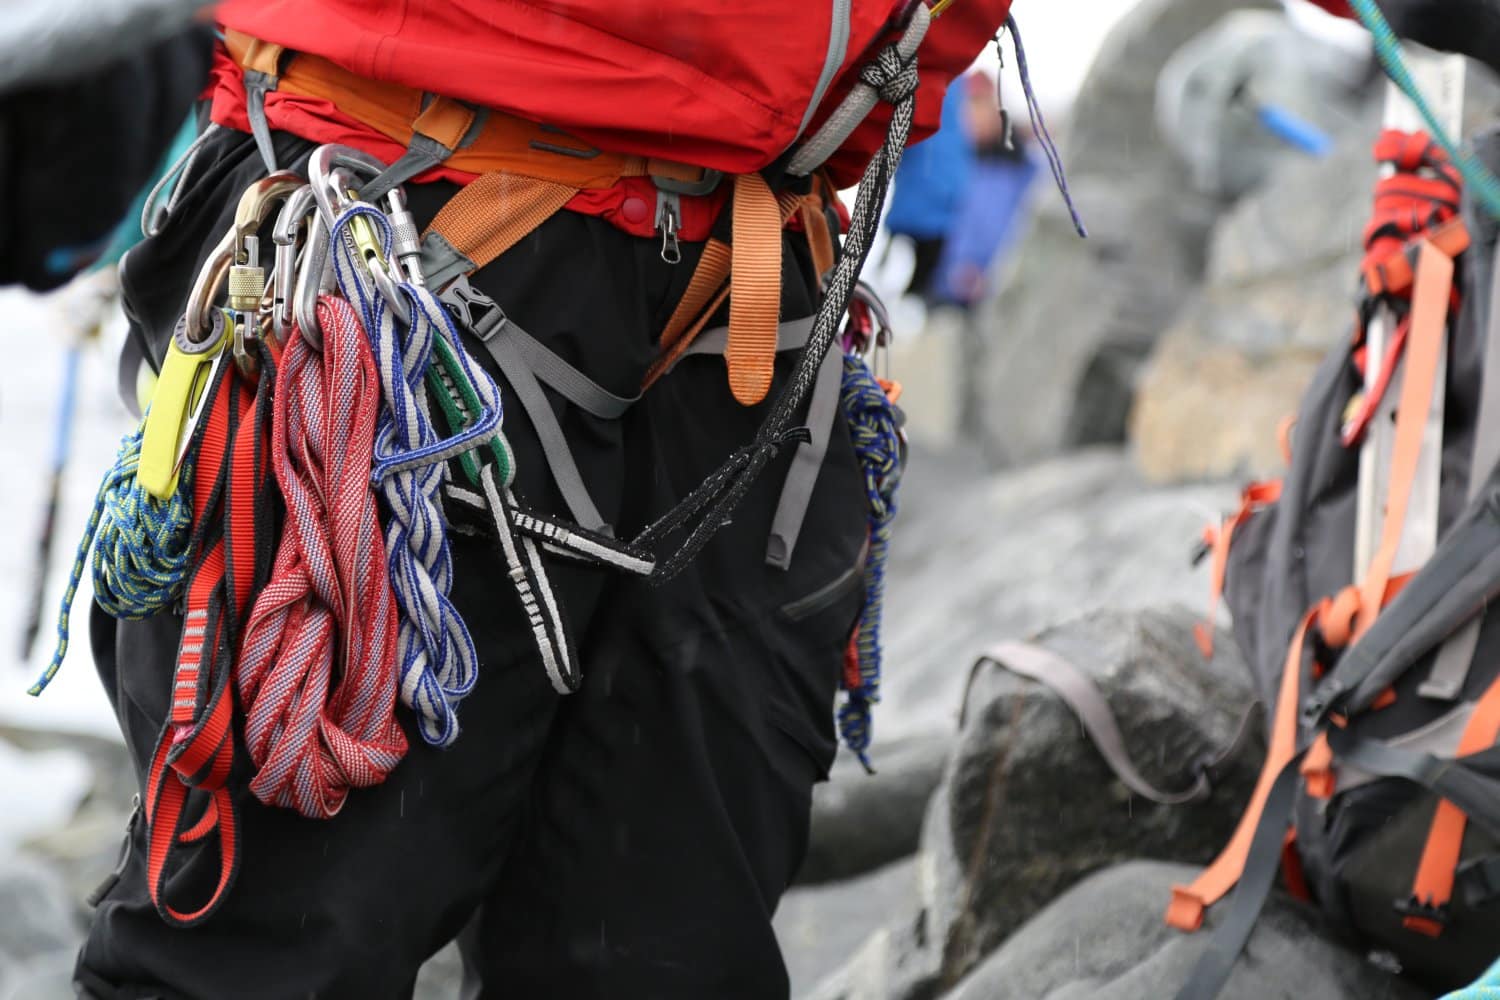 Mountaineering gear